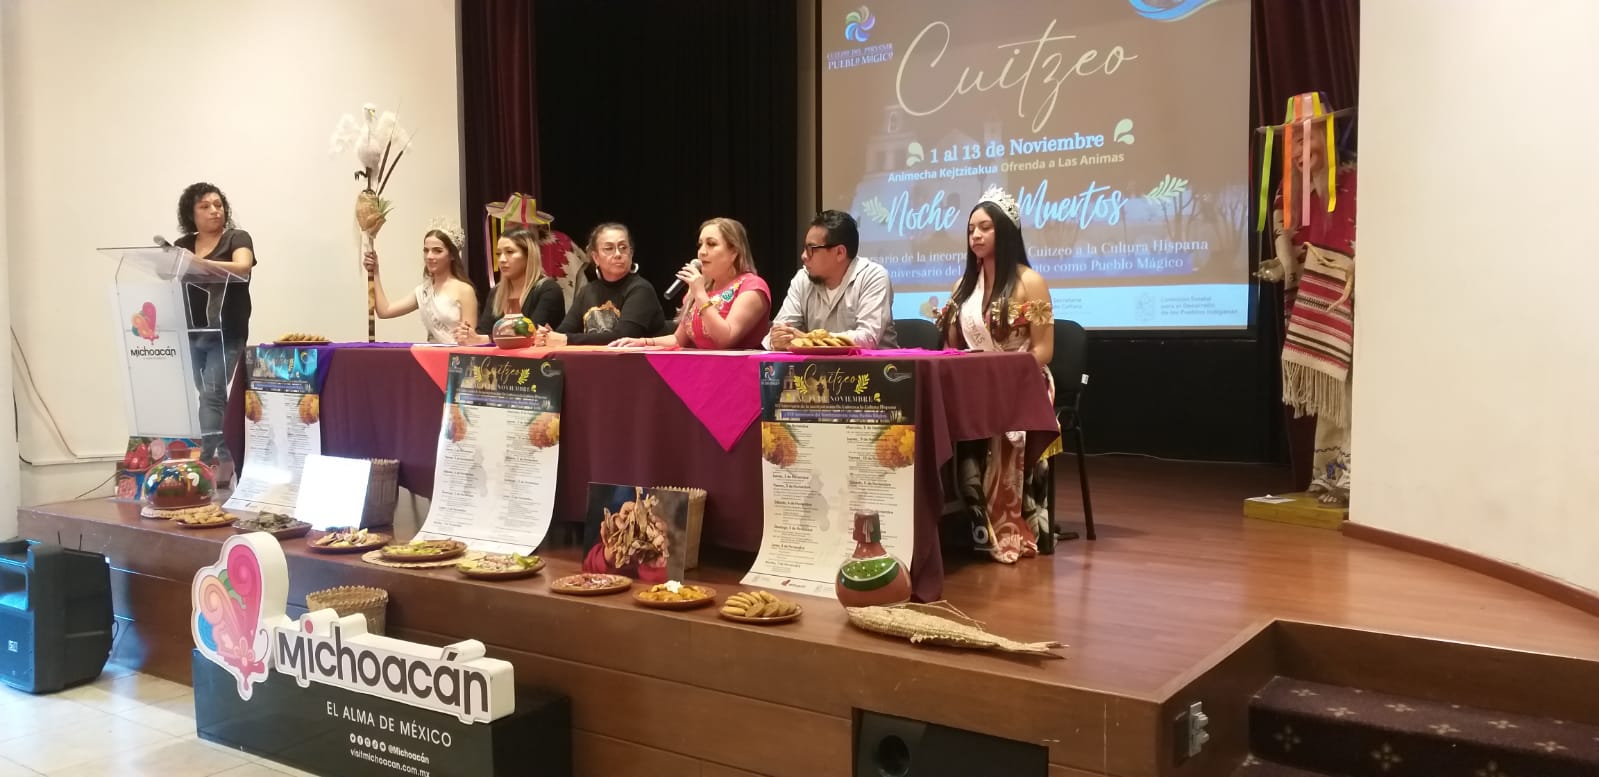 Cuitzeo celebra Noche de Muertos e incorporación a la cultura hispánica